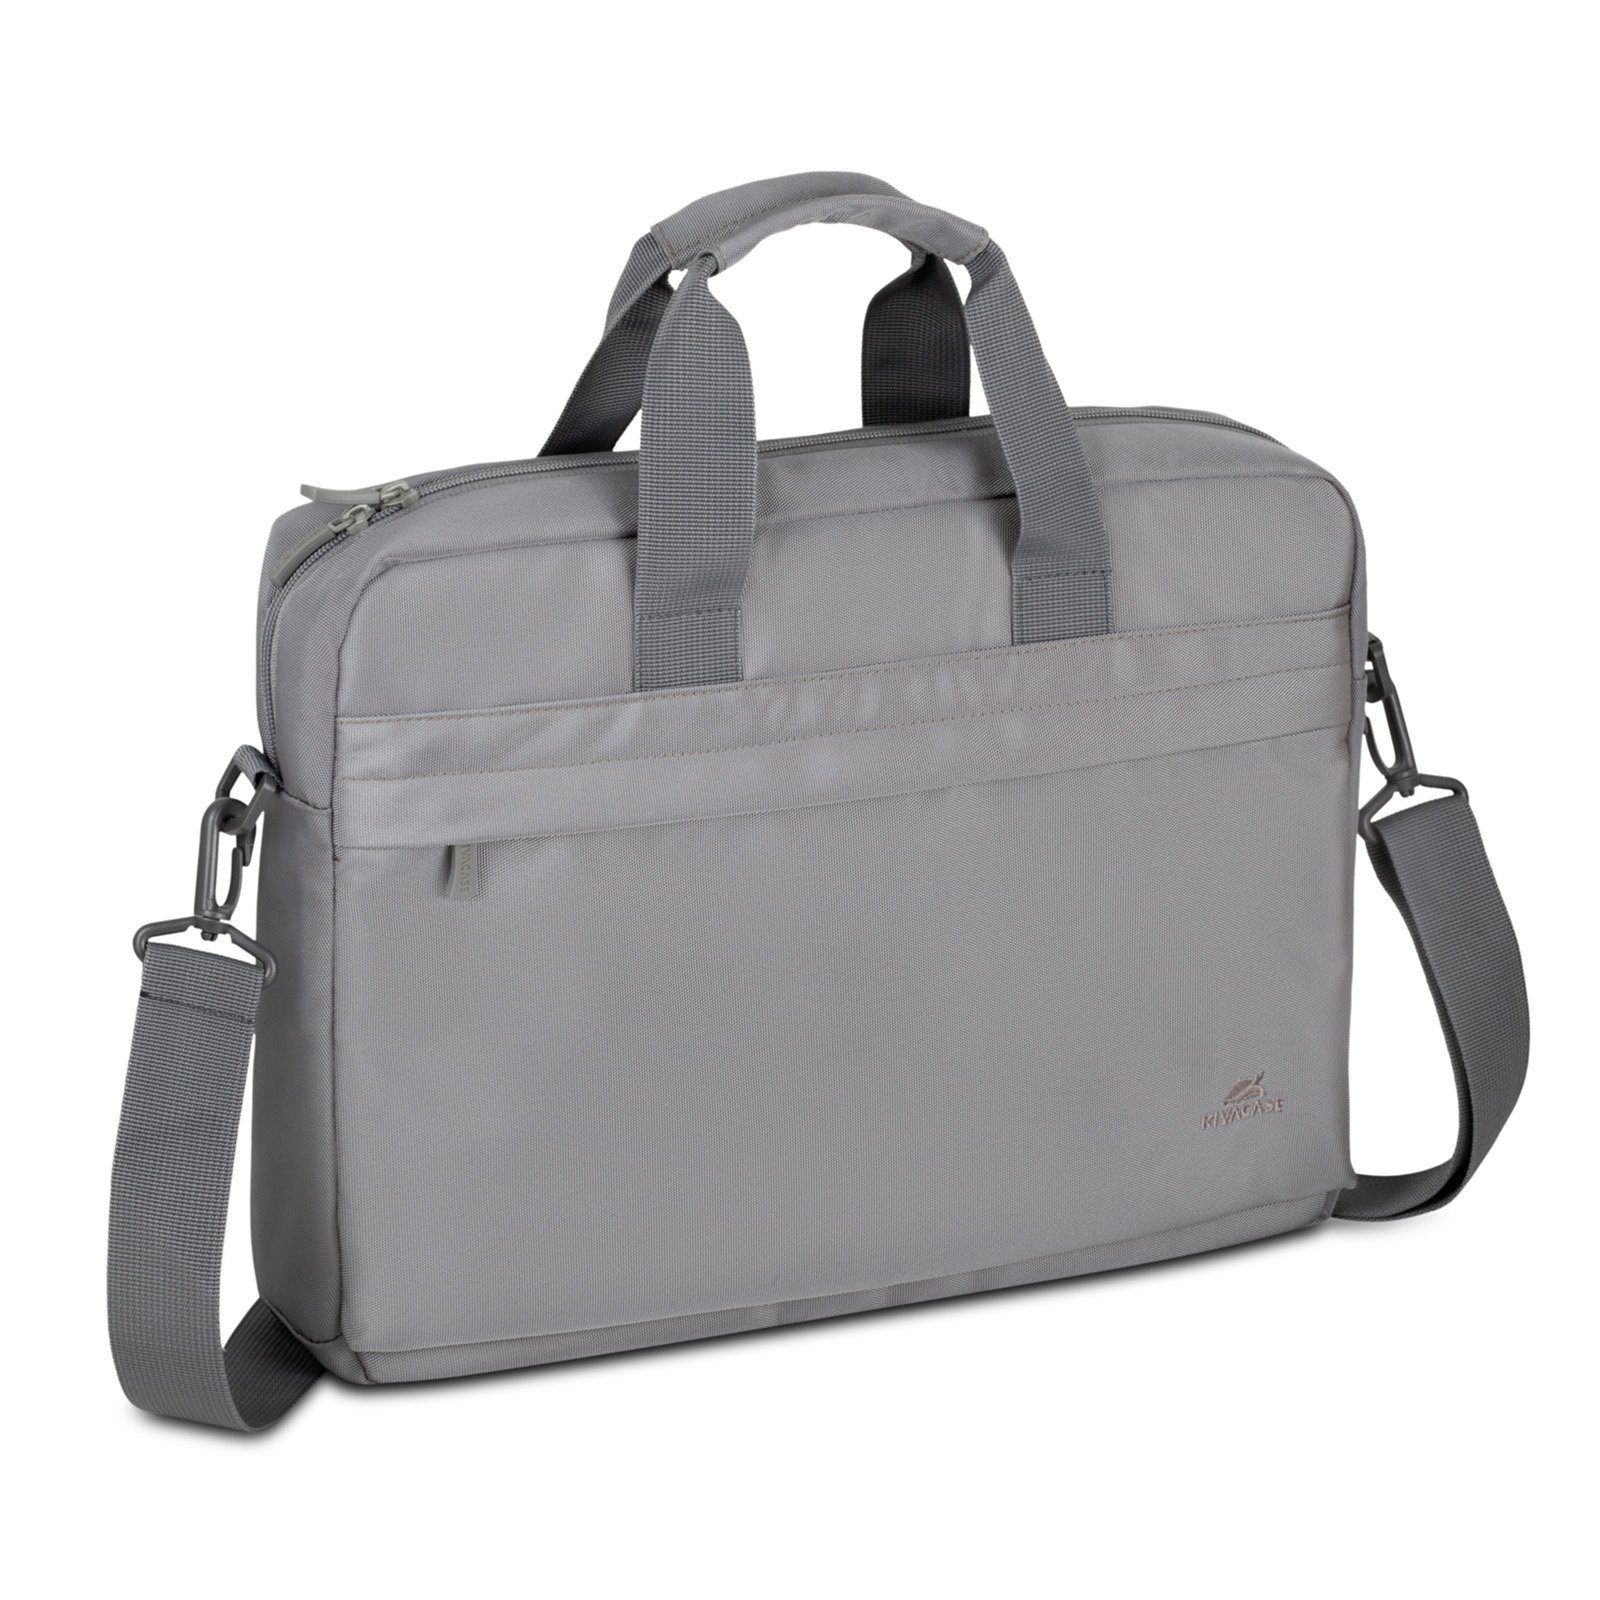 Rivacase Rucksack Laptoptasche 14 Zoll - wasserabweisende Aktentasche für Business, Uni light grey